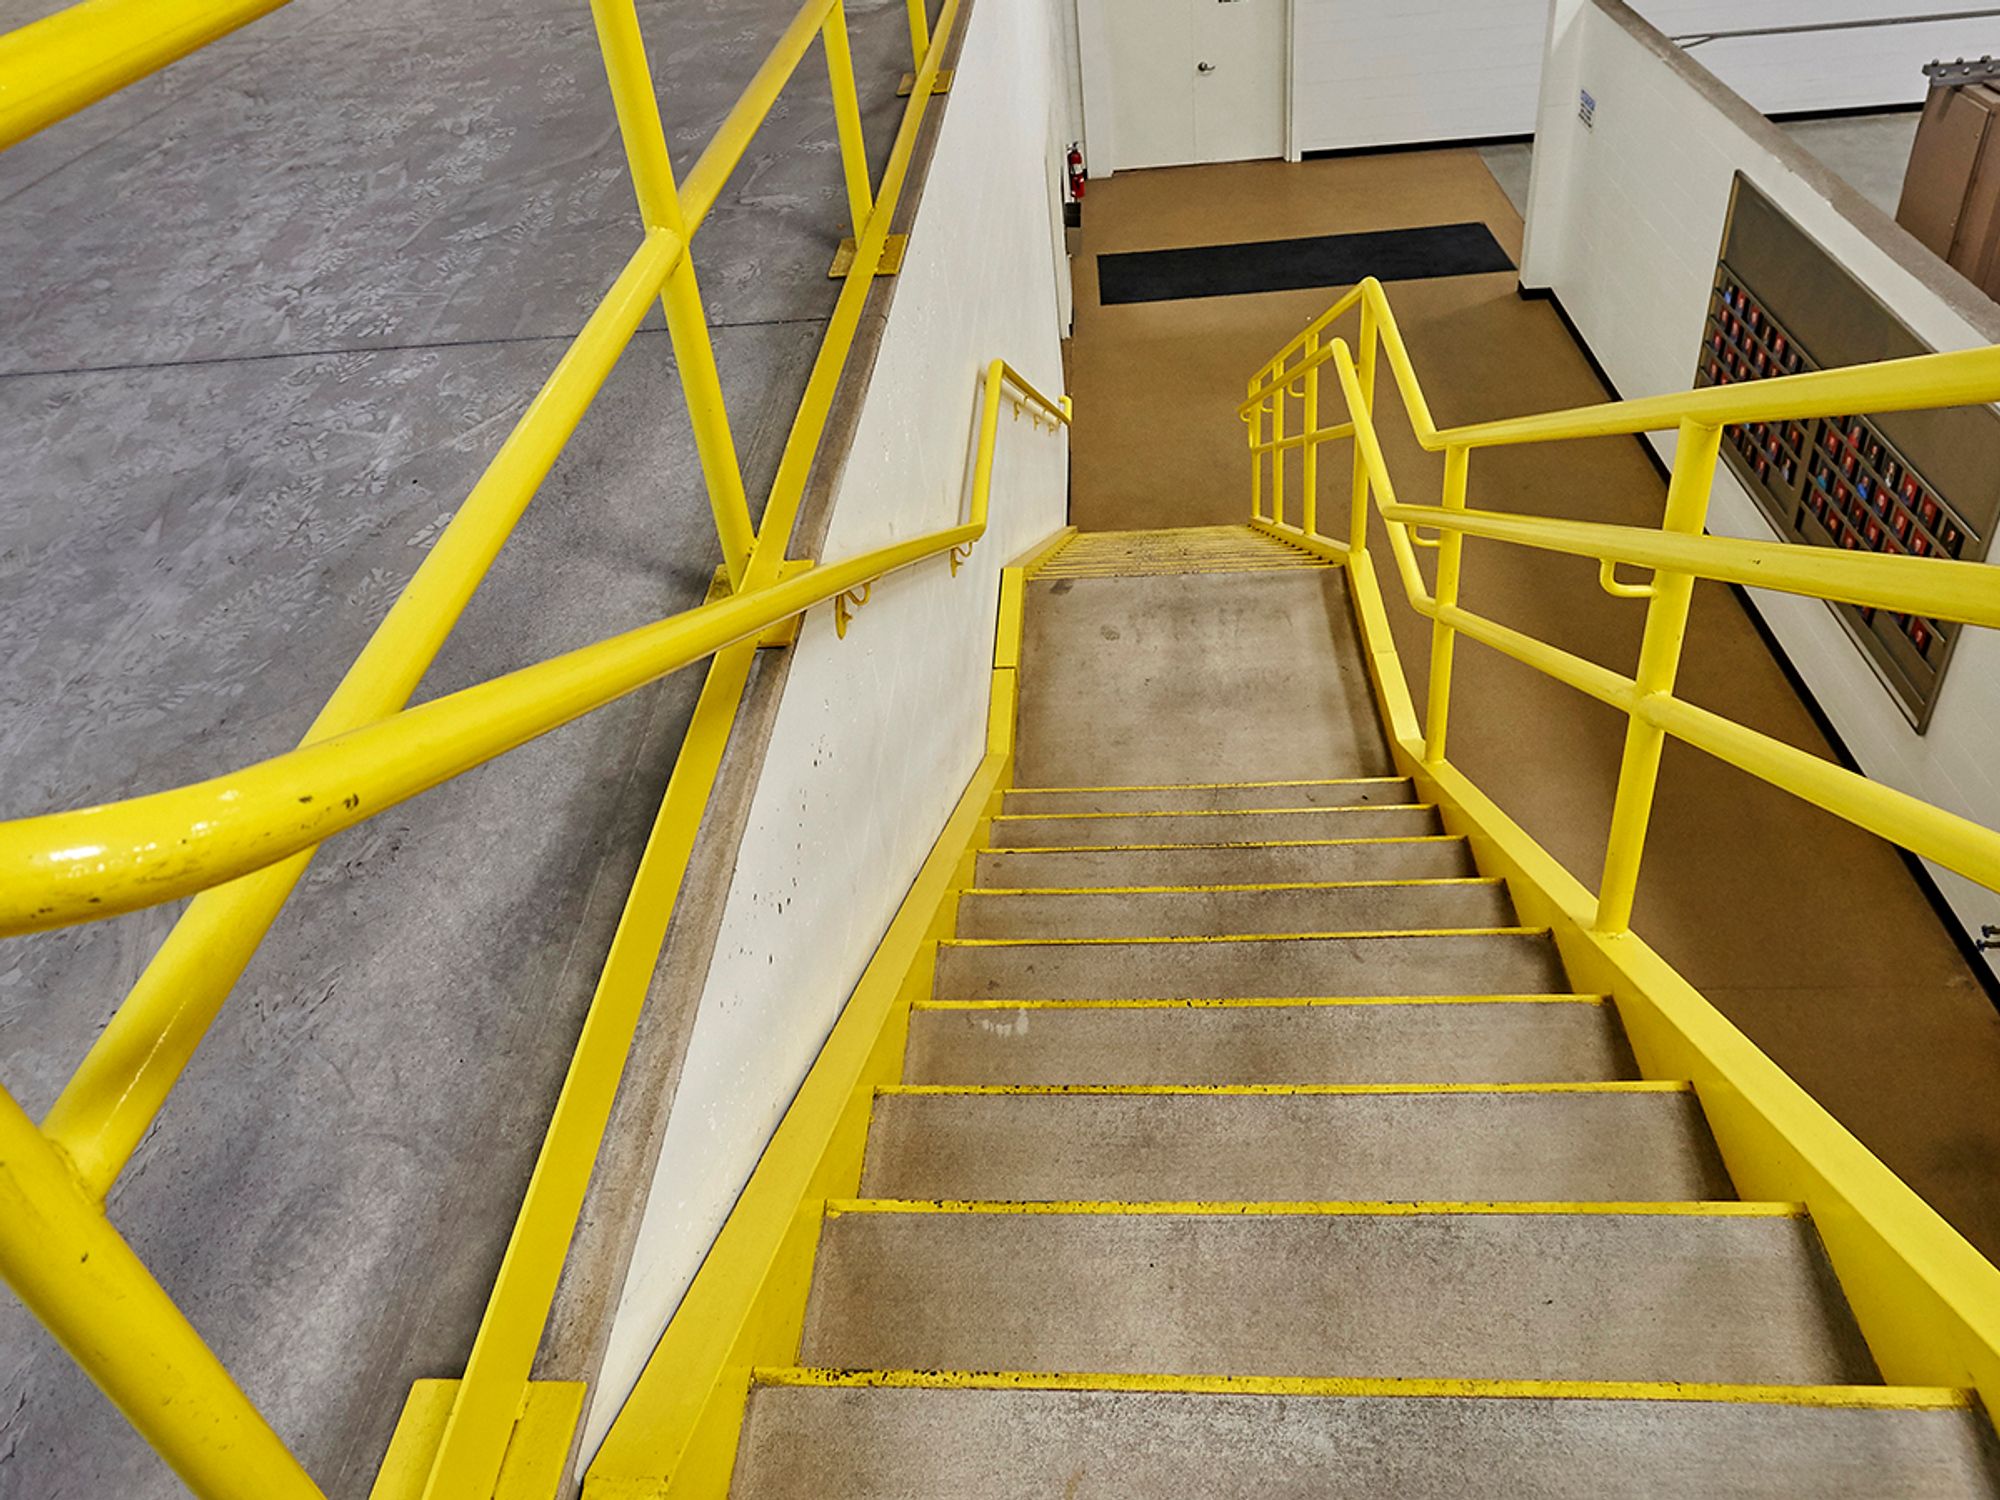 Ensure stairway railings meet height requirements